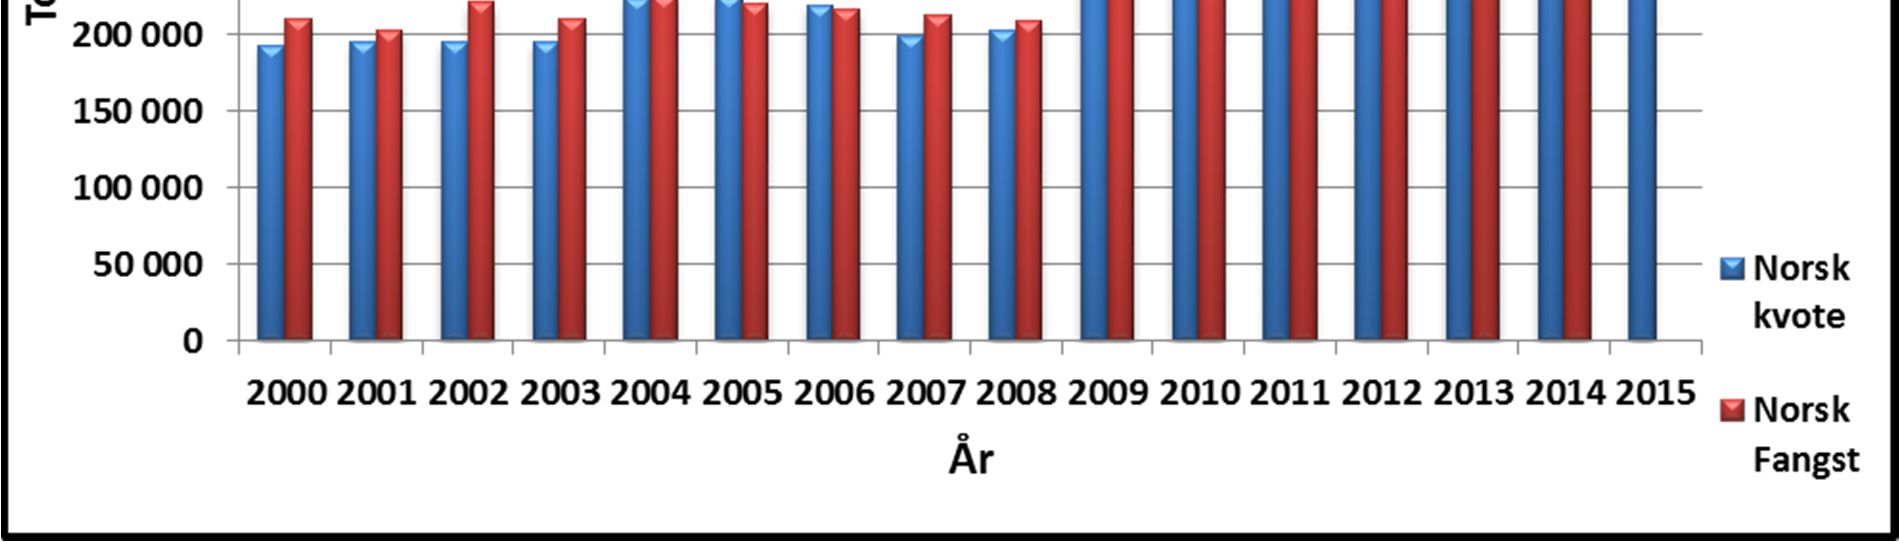 98 Figur 1: Norsk totalkvote og fangst av torsk nord for 62 N i årene 2000 til 2015: Figur 2 viser norsk totalkvote